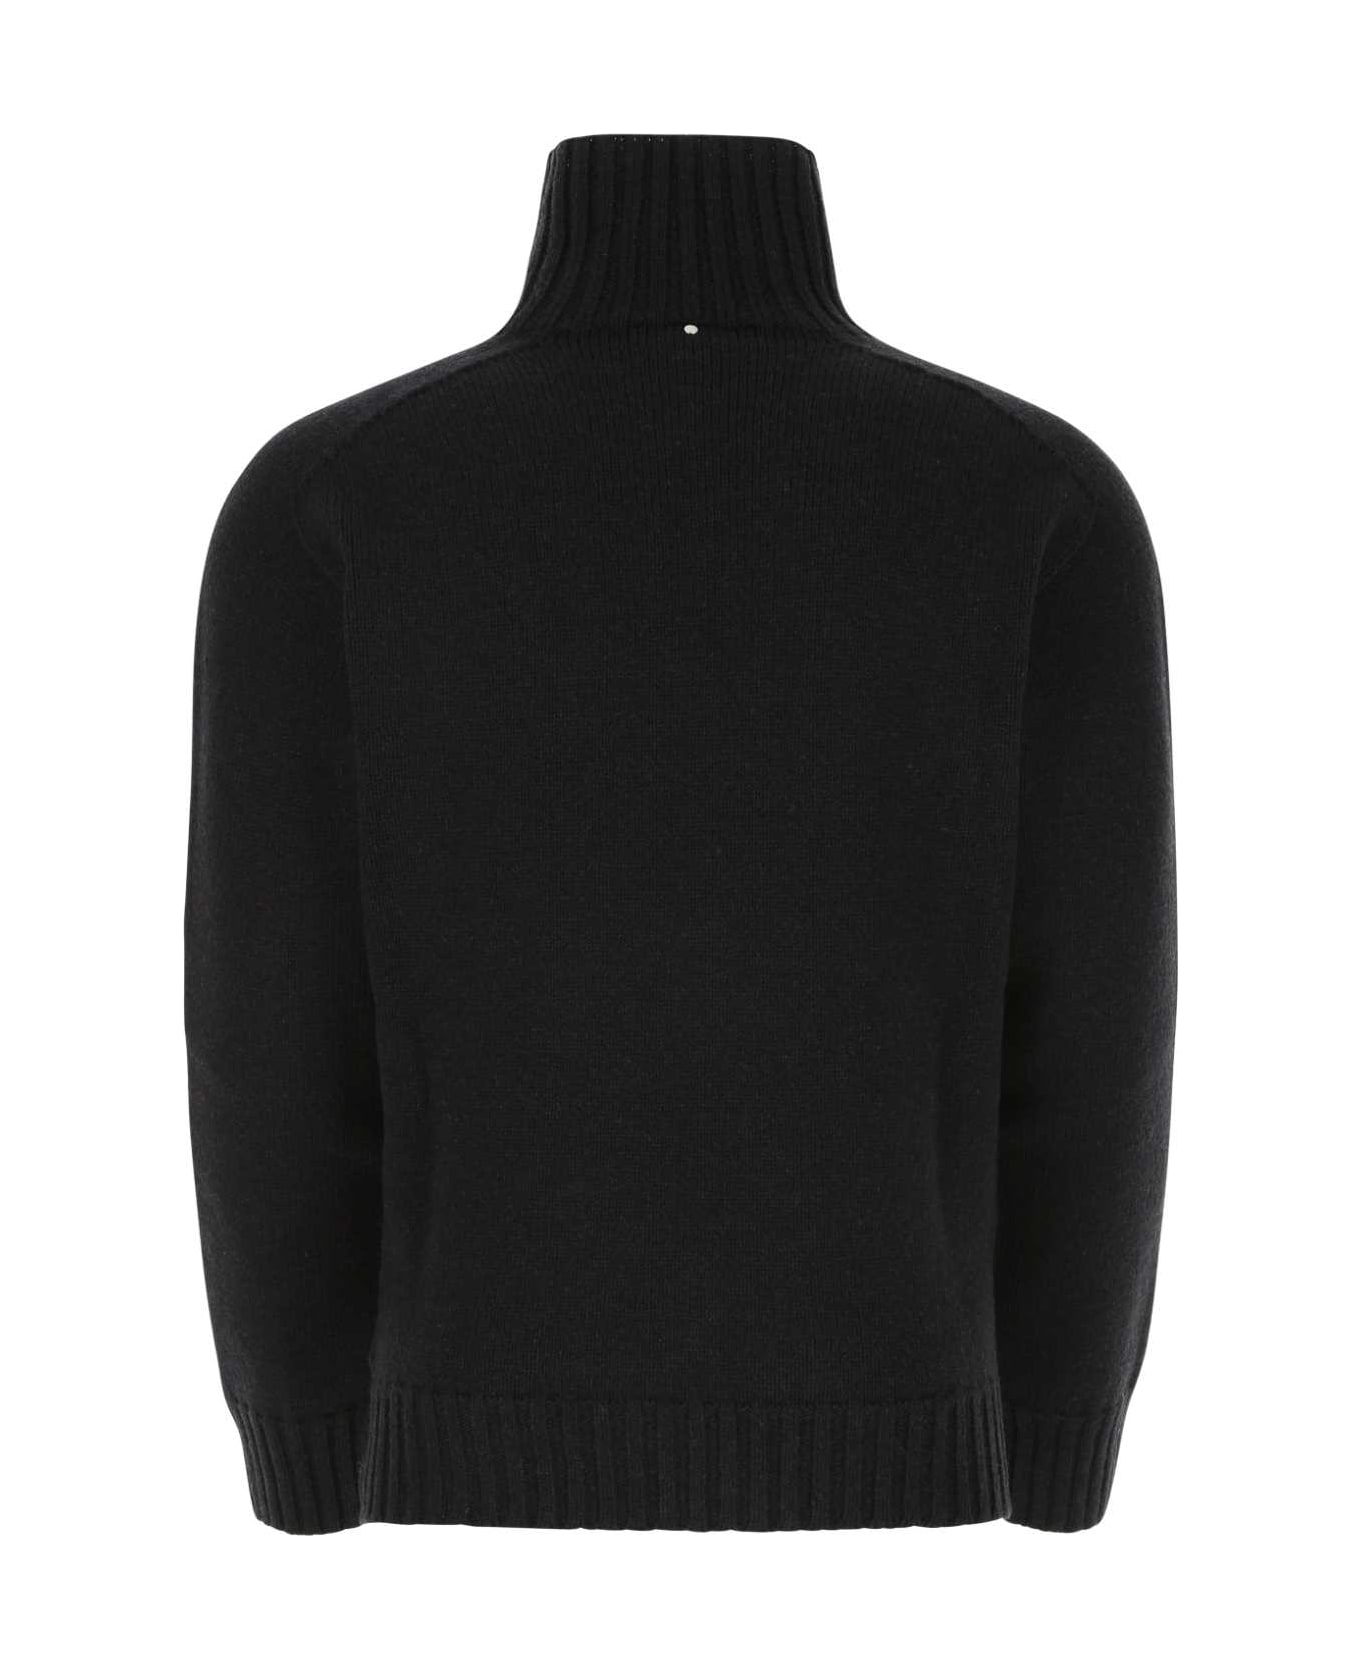 OAMC Black Wool Sweater - 001